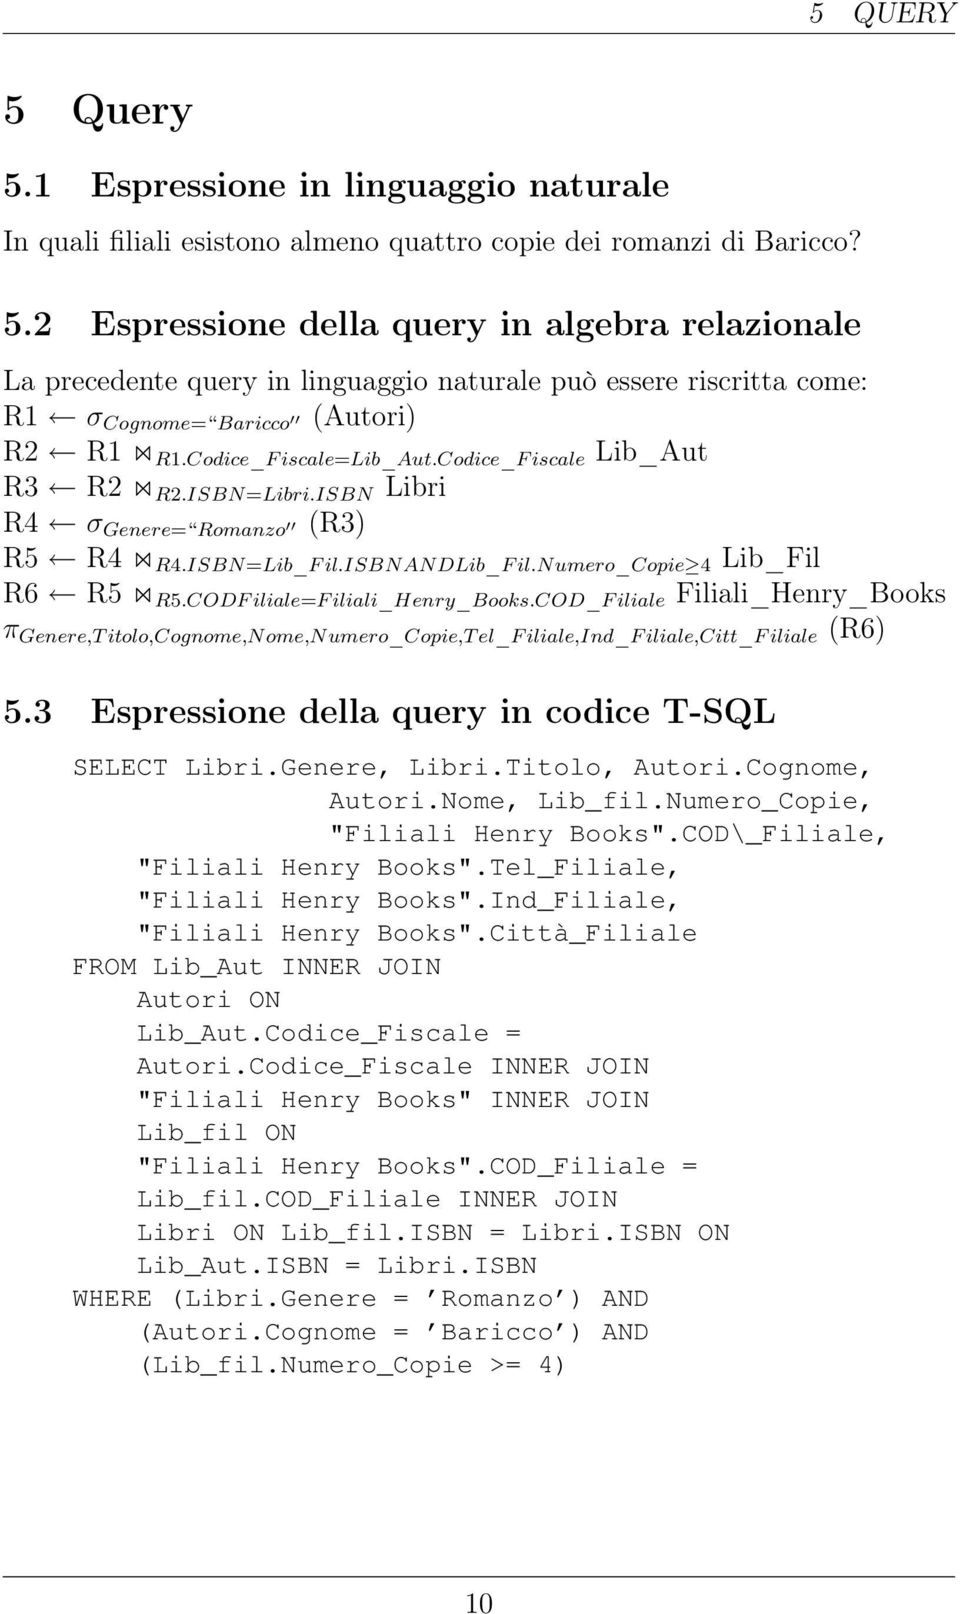 CODF iliale=f iliali_henry_books.cod_f iliale Filiali_Henry_Books π Genere,T itolo,cognome,nome,numero_copie,t el_f iliale,ind_f iliale,citt_f iliale (R6) 5.